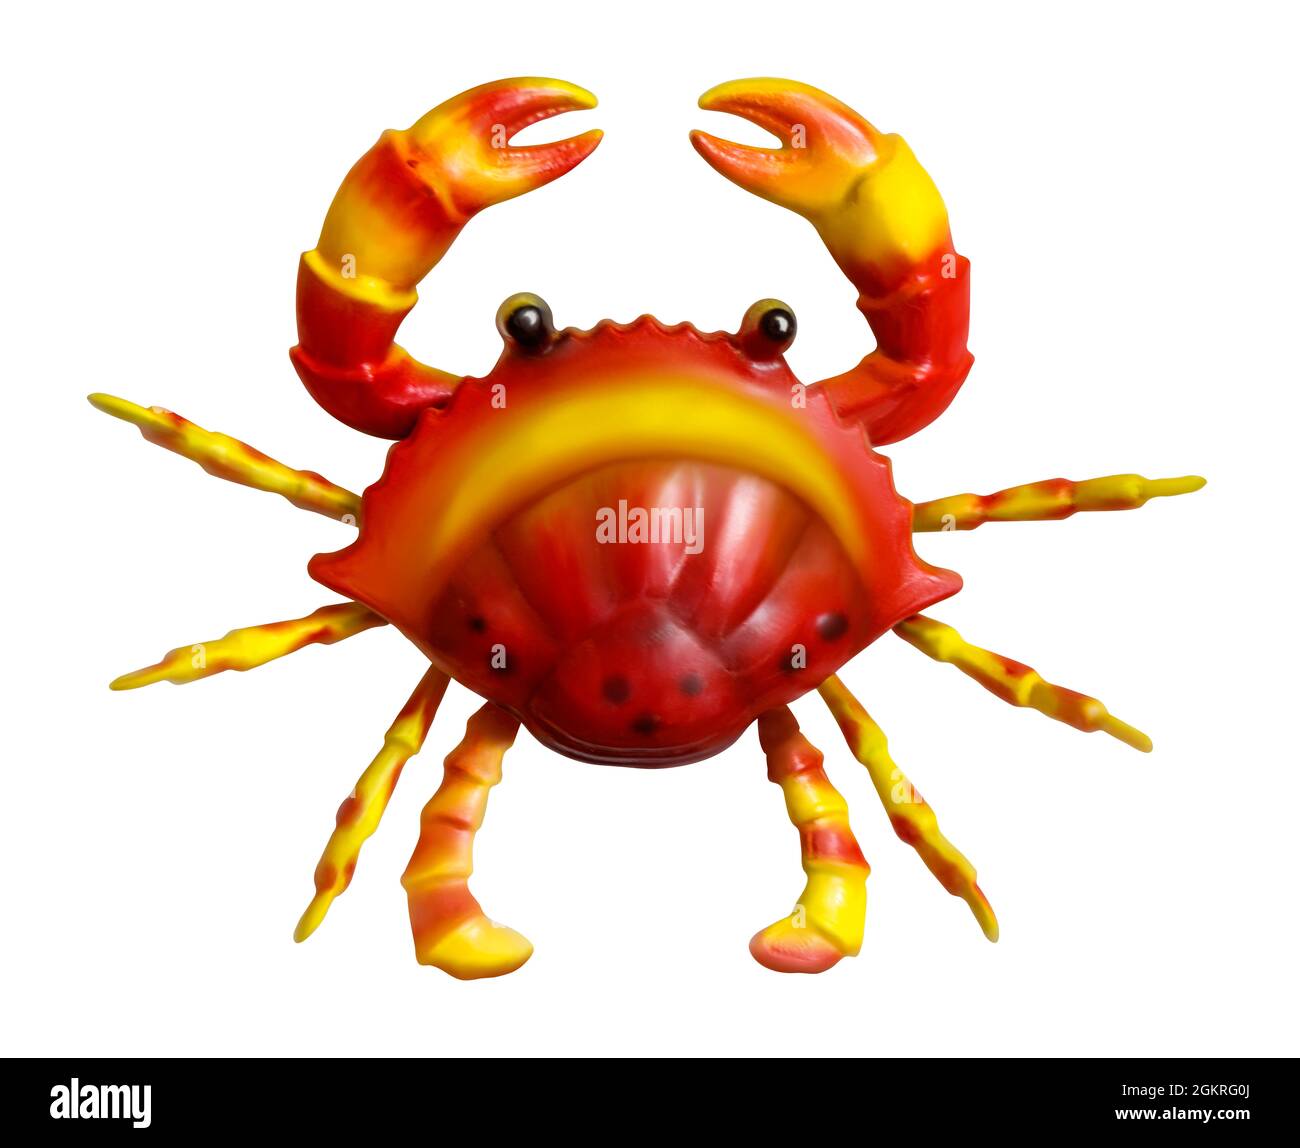 Illustration d'un crabe stylisé rouge et jaune qui a l'air triste ou en colère, peut-être les deux, isolé sur un fond blanc, avec un chemin d'écrêtage Banque D'Images